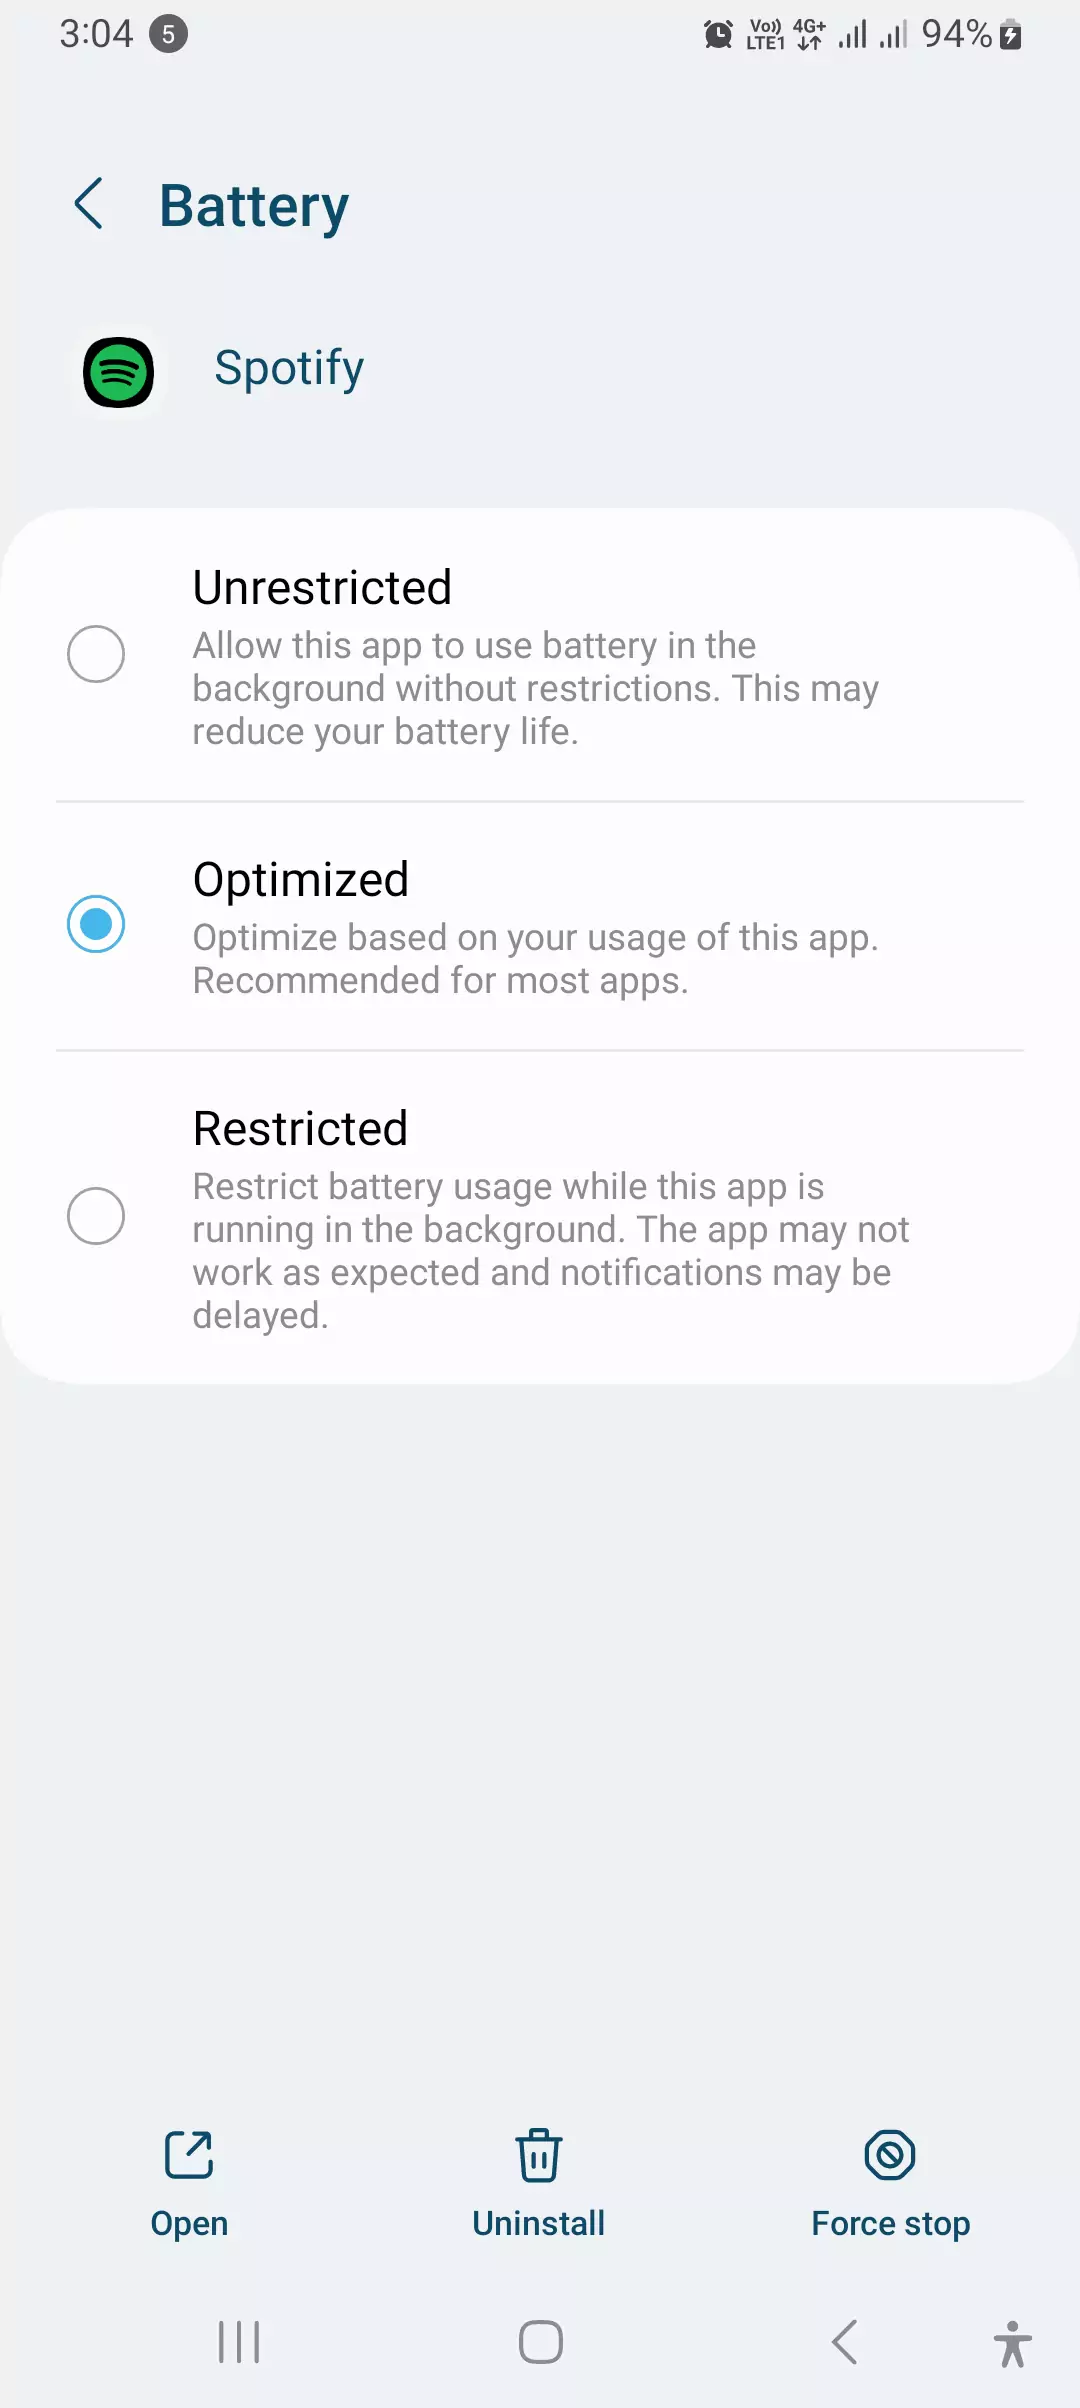 spotify battery optimization settings